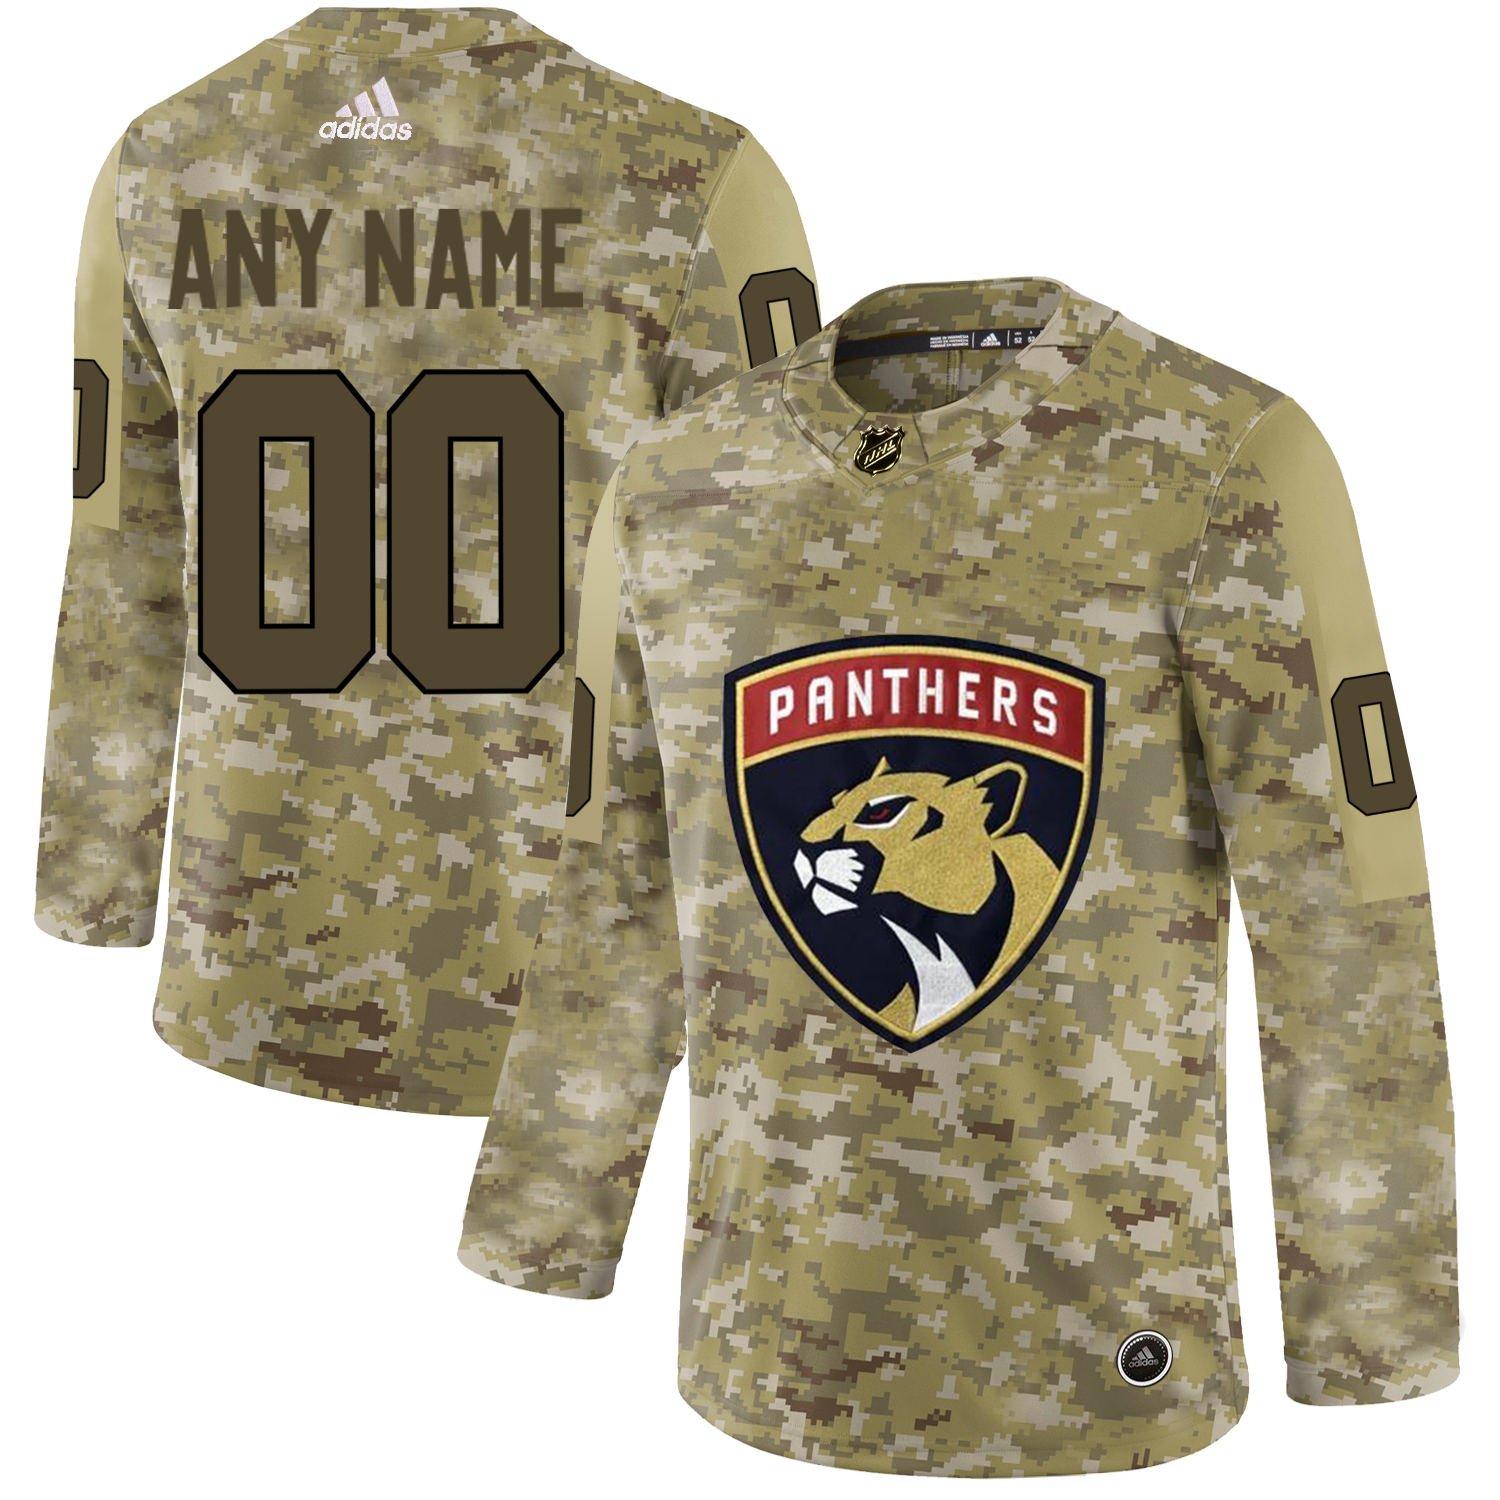 Florida Panthers Camo Men's Customized Adidas Jersey - Click Image to Close